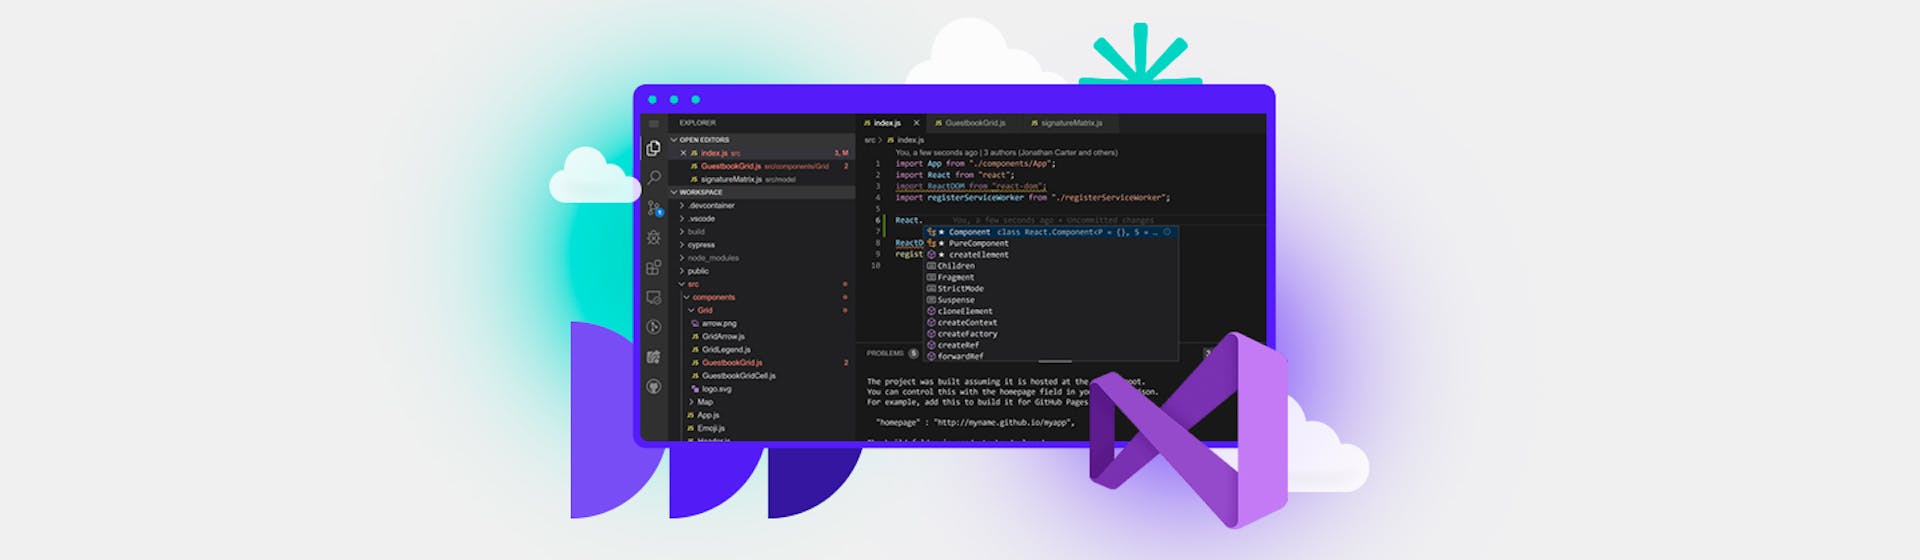 ¿Qué es Visual Studio? ¡El desarrollo de software nunca fue más fácil!